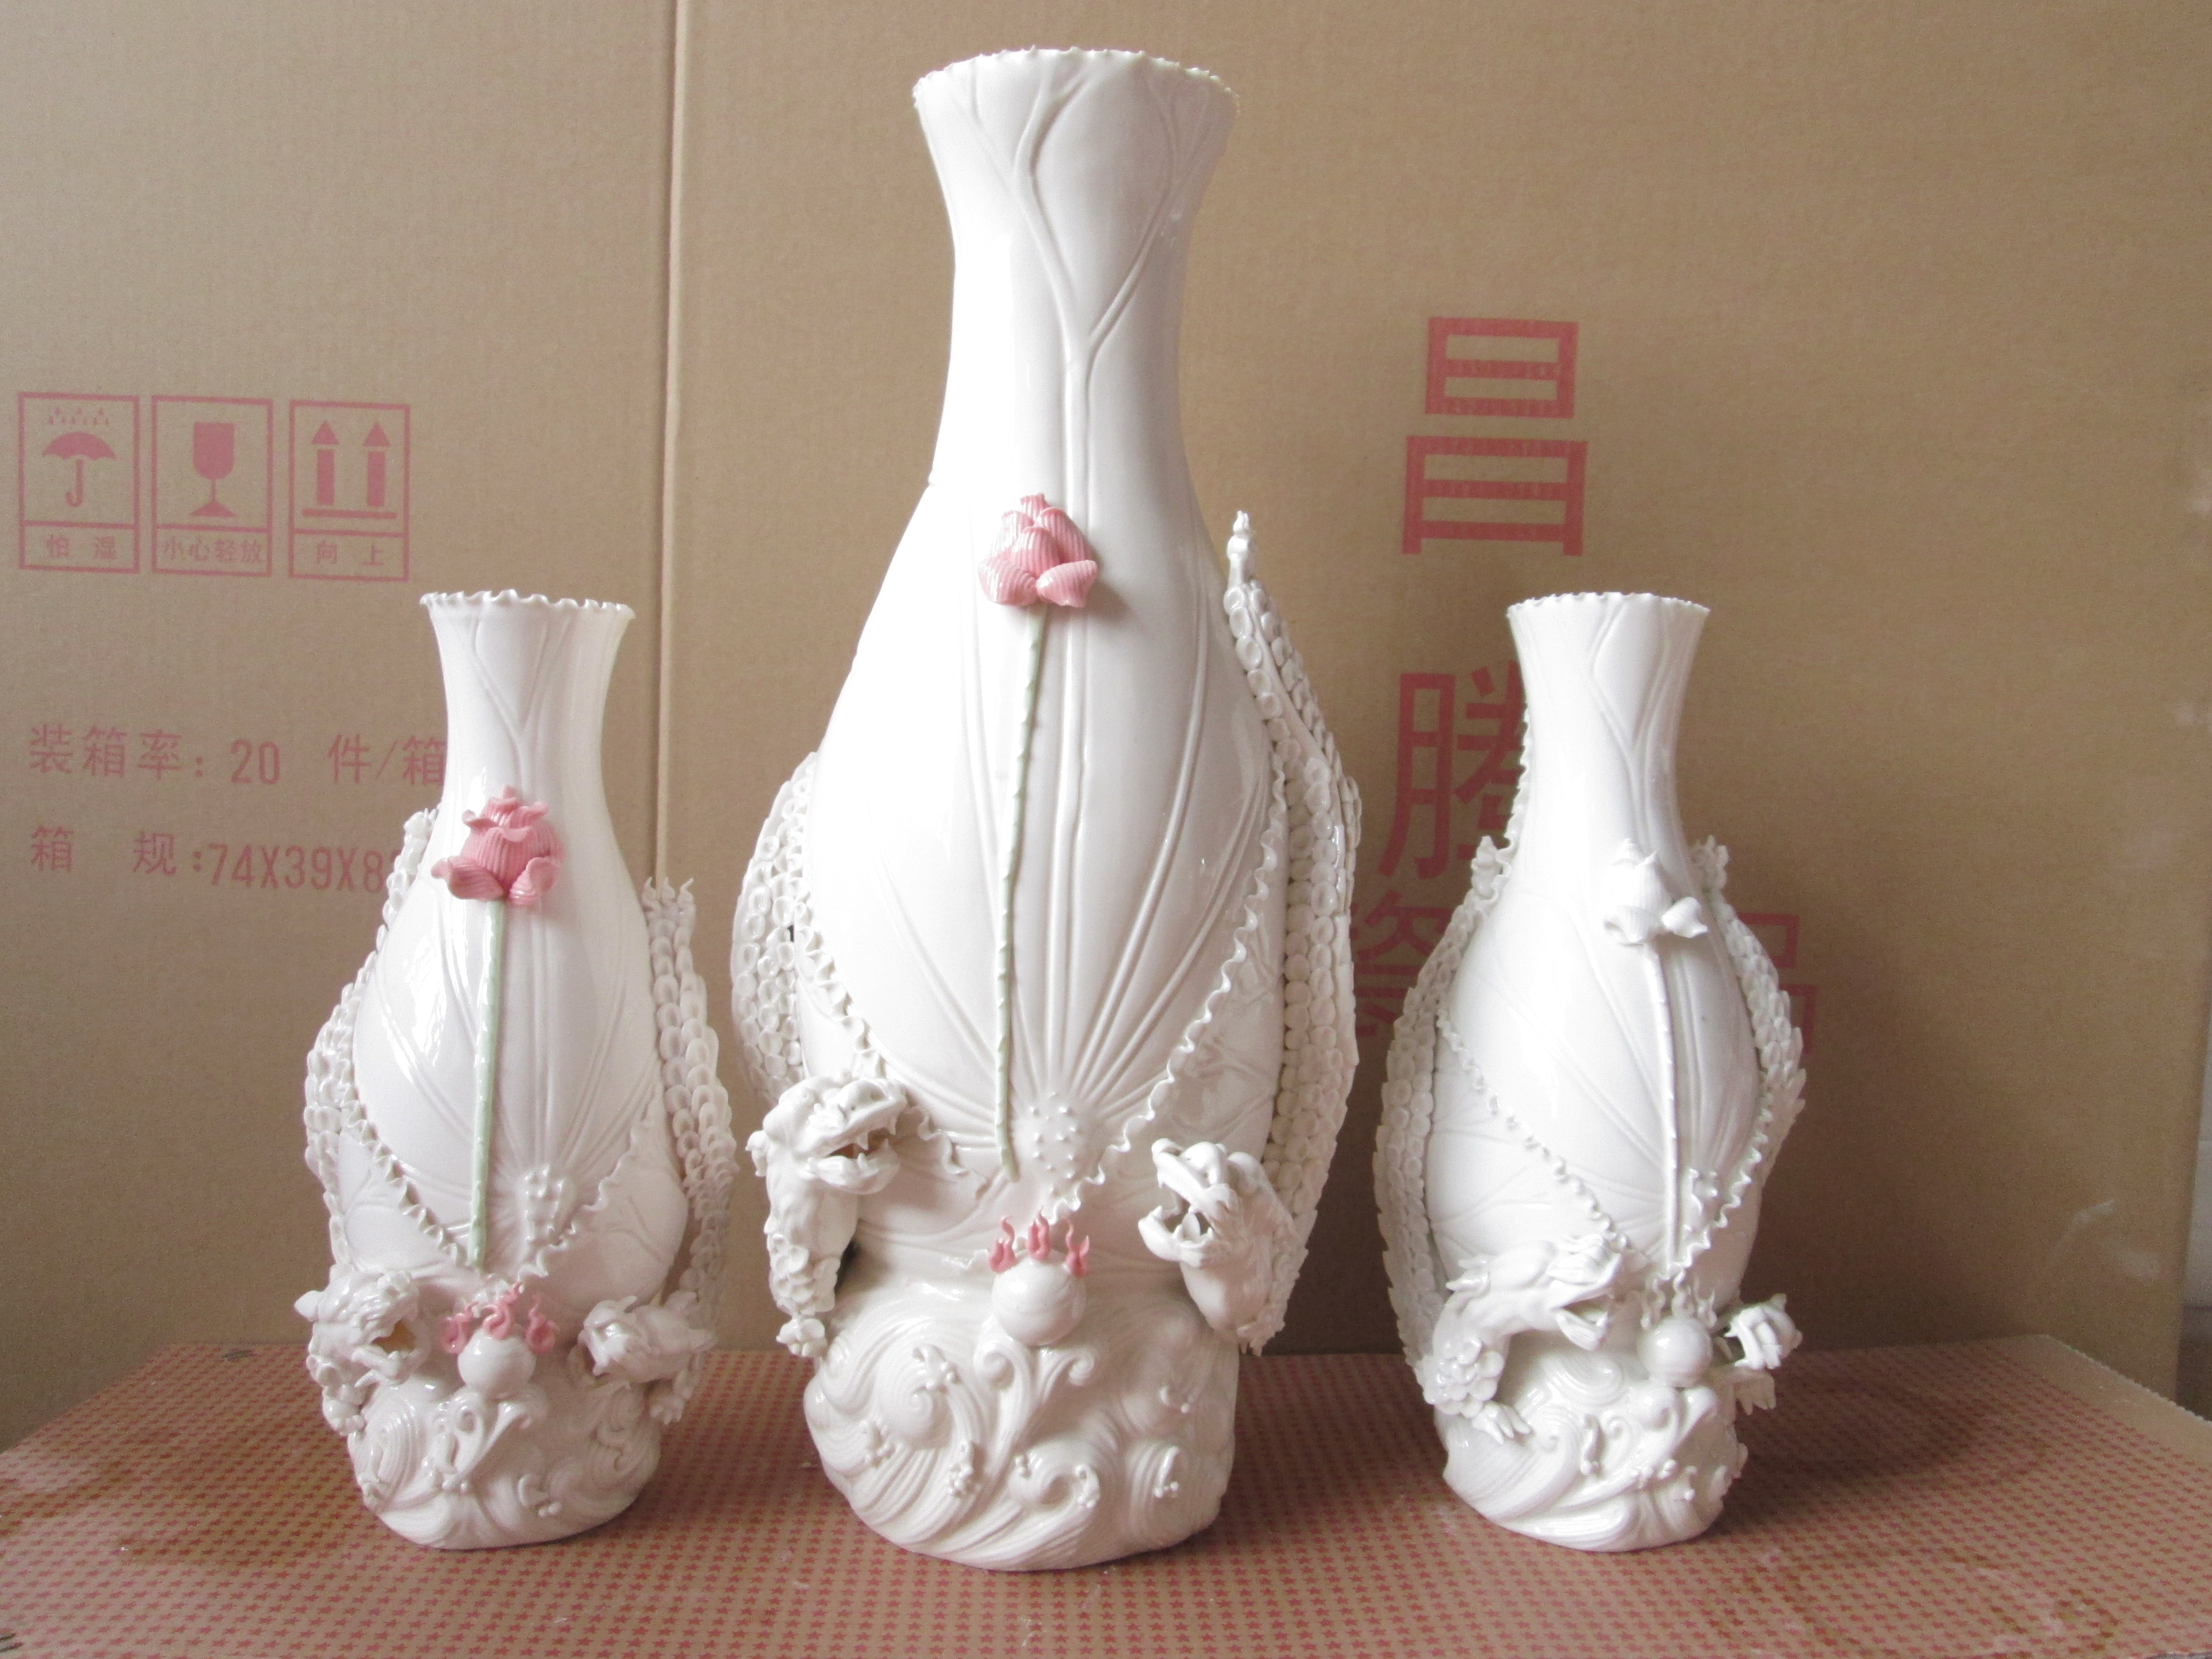 四件套茶具批发 紫砂陶瓷德化陶瓷